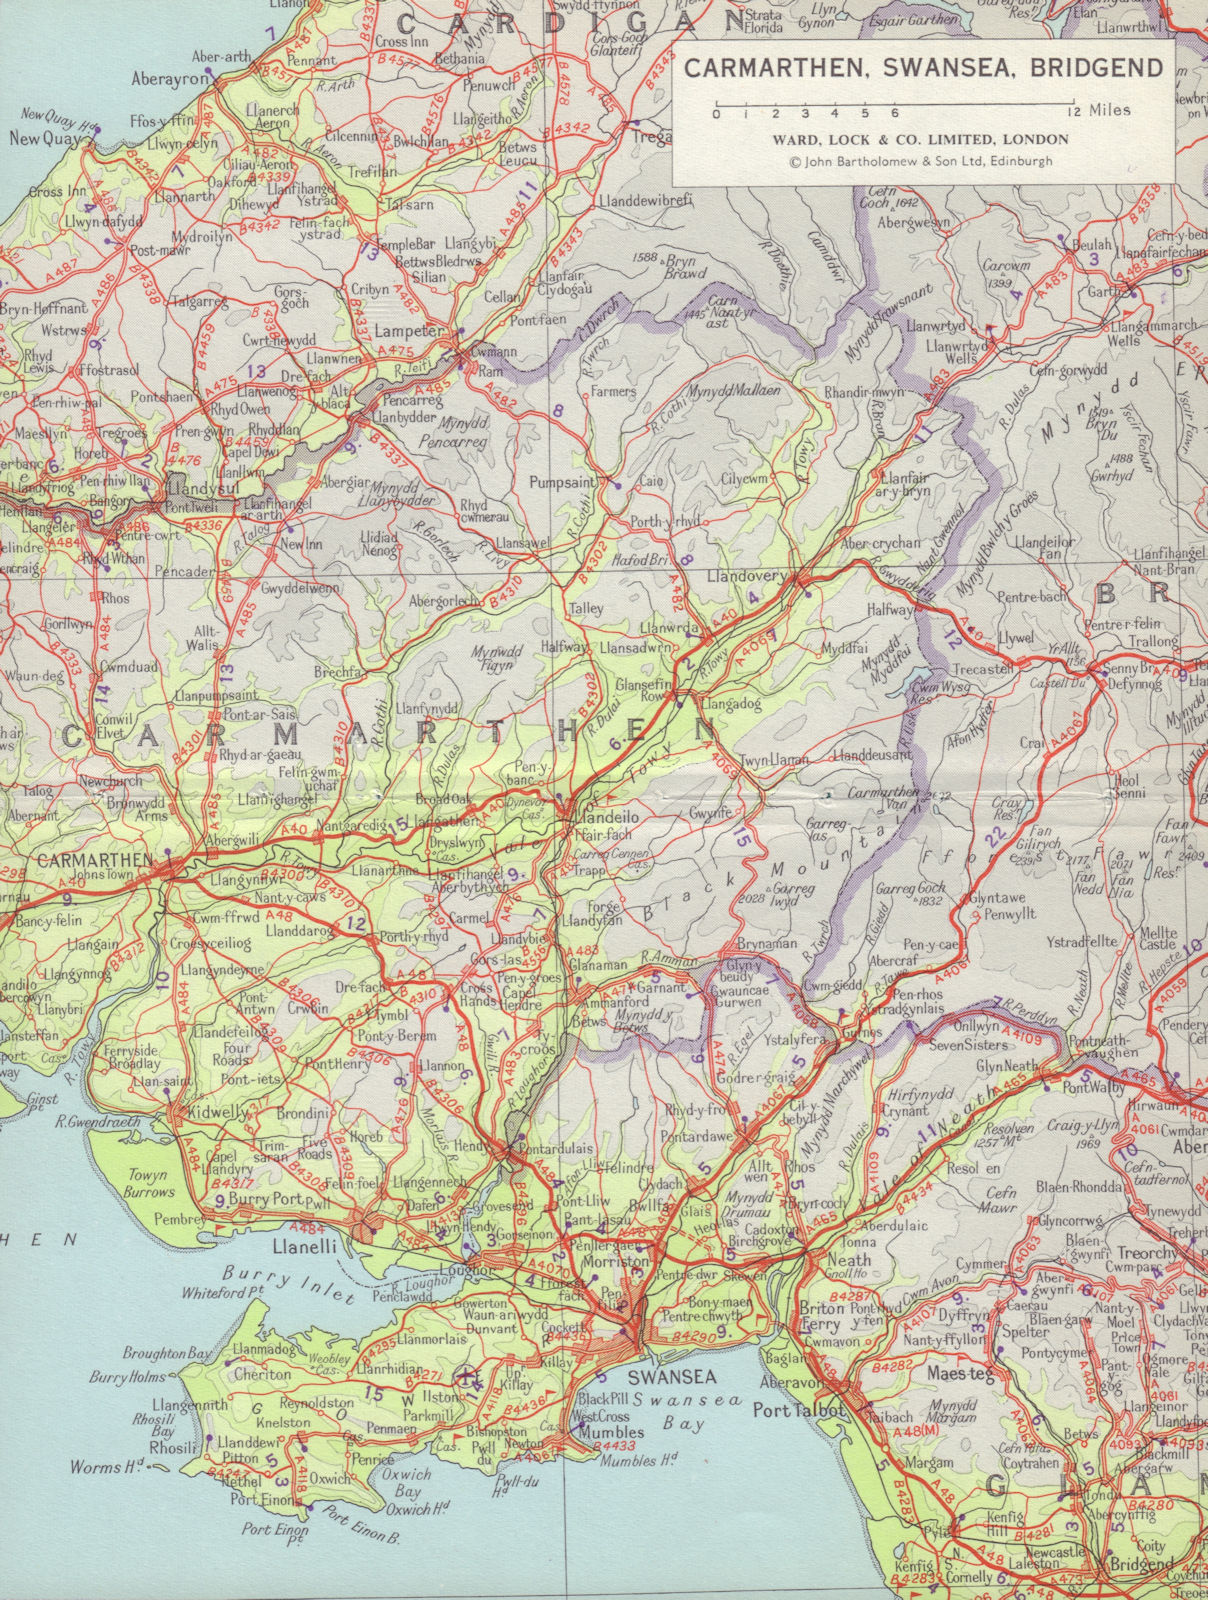 South Wales. Carmarthen Swansea Bridgend Gower. WARD LOCK 1966 old vintage map